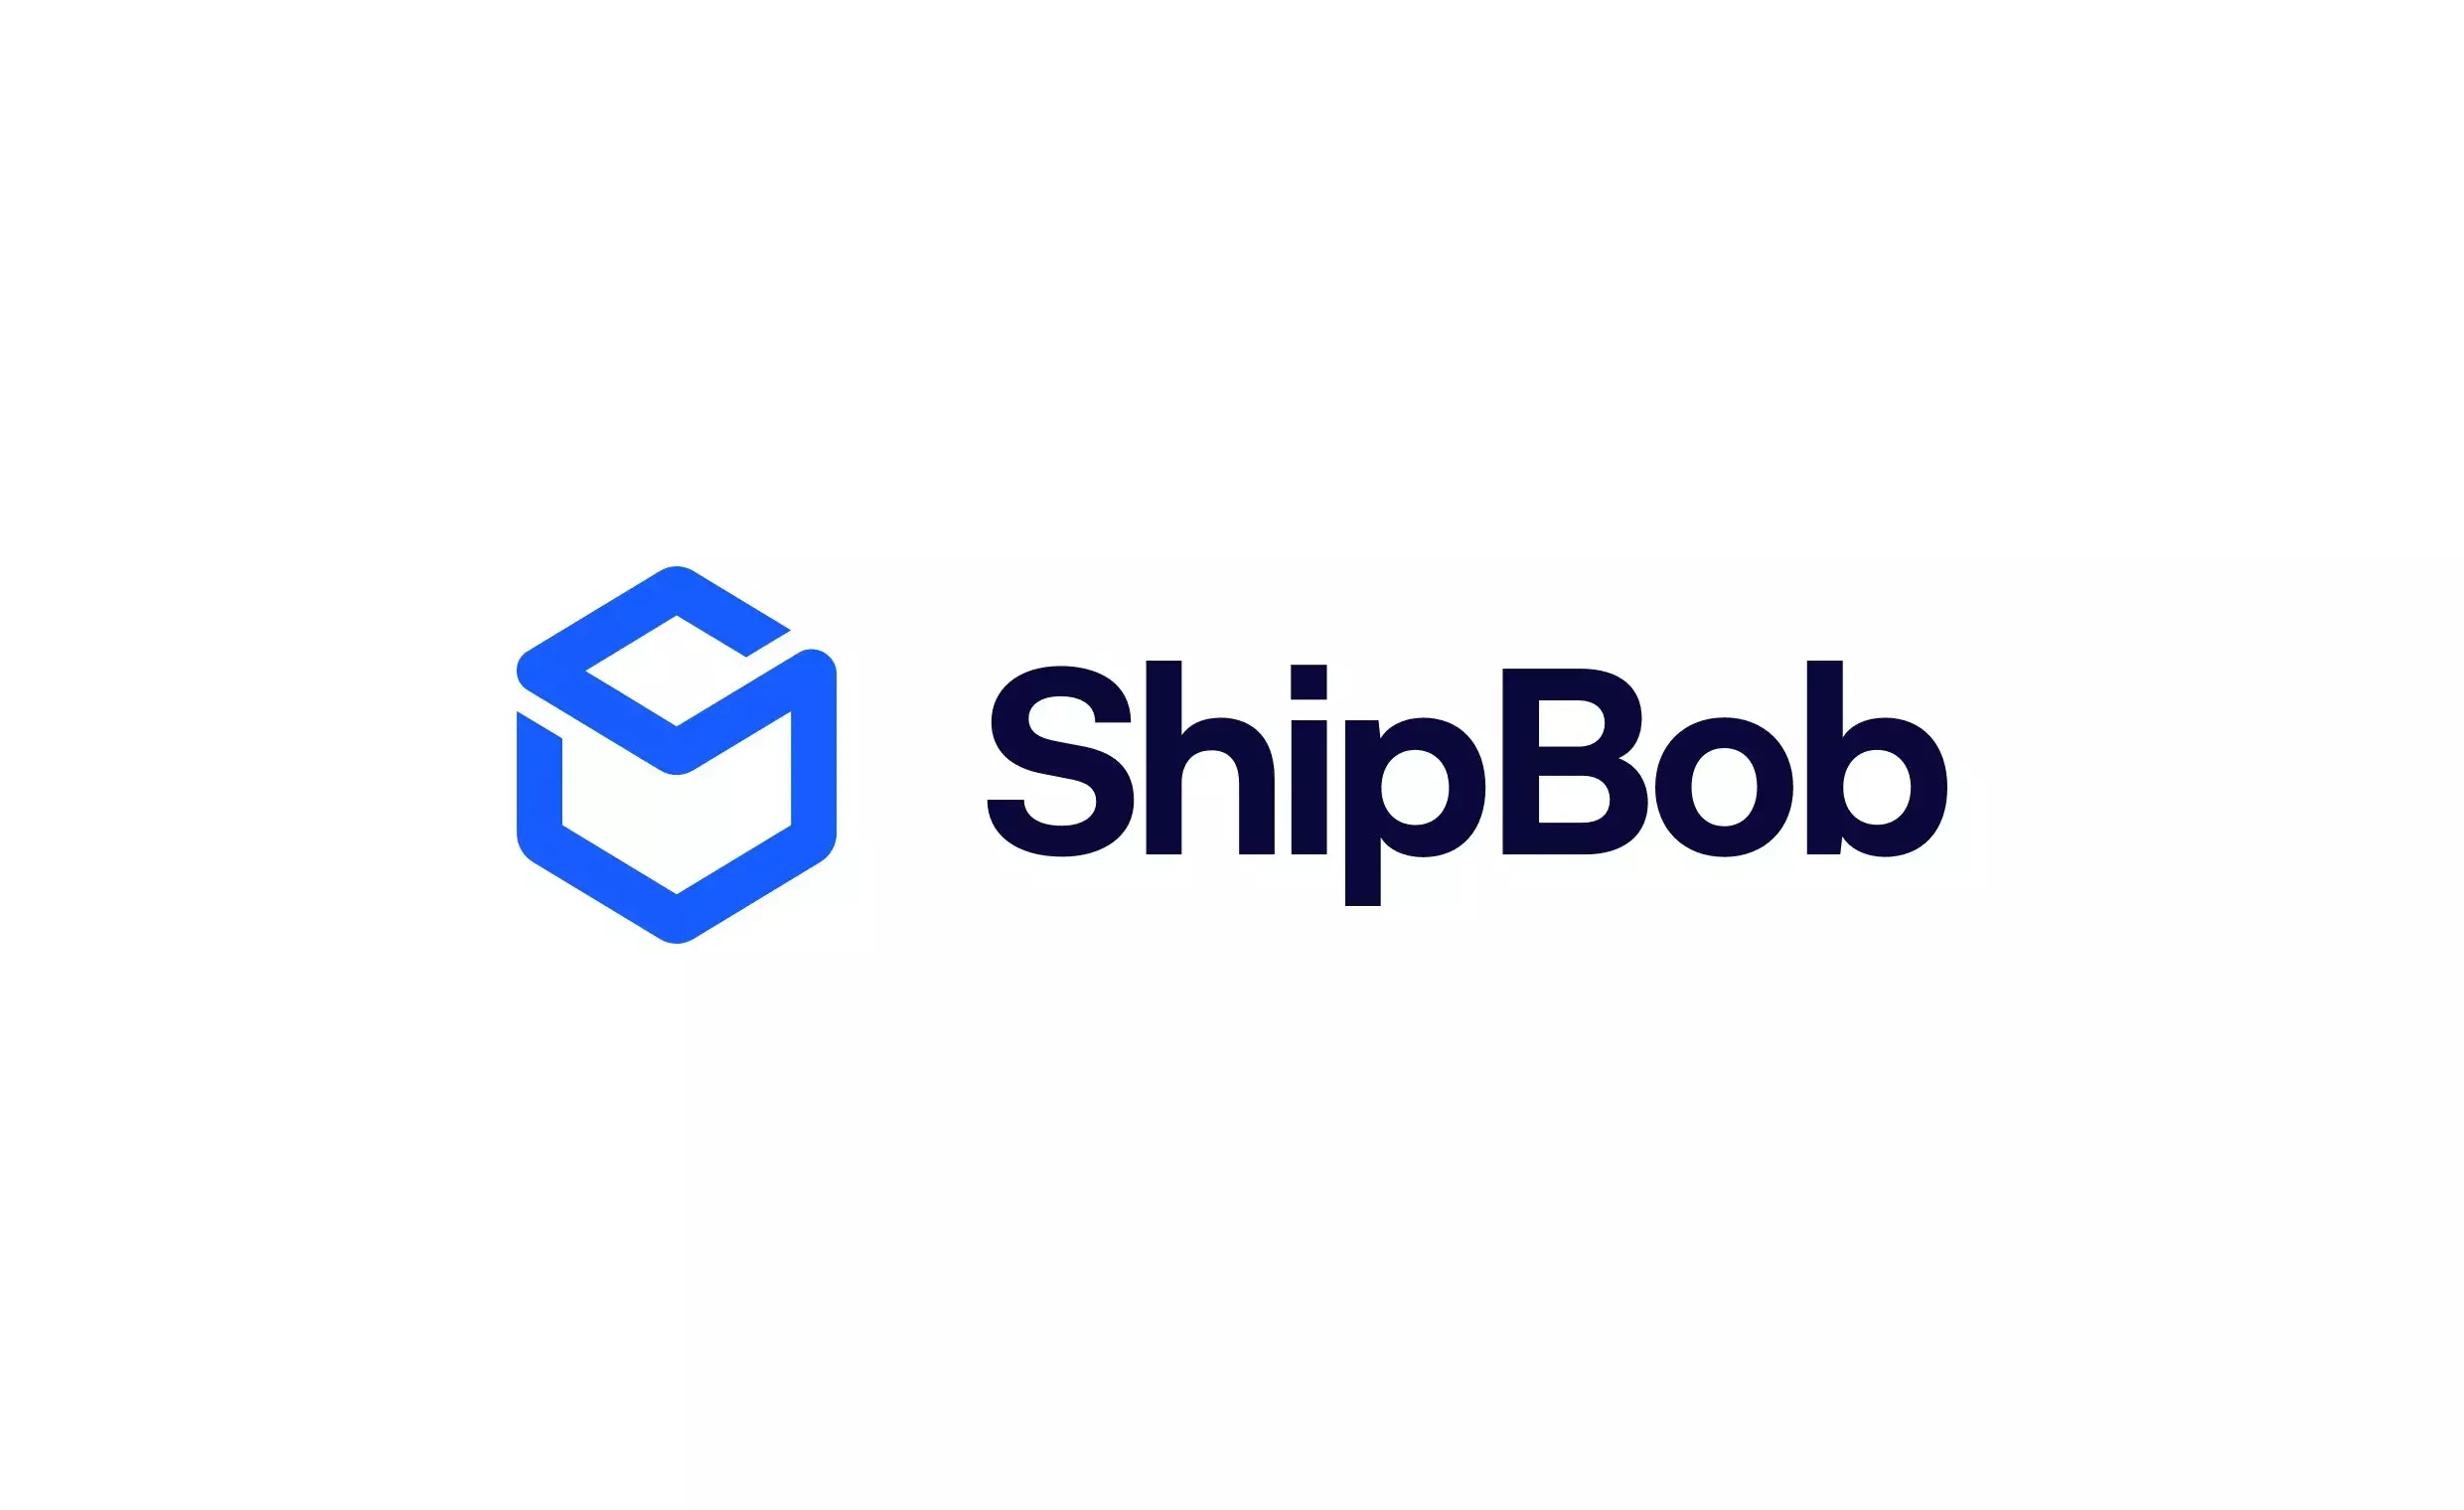 Shipbob logo